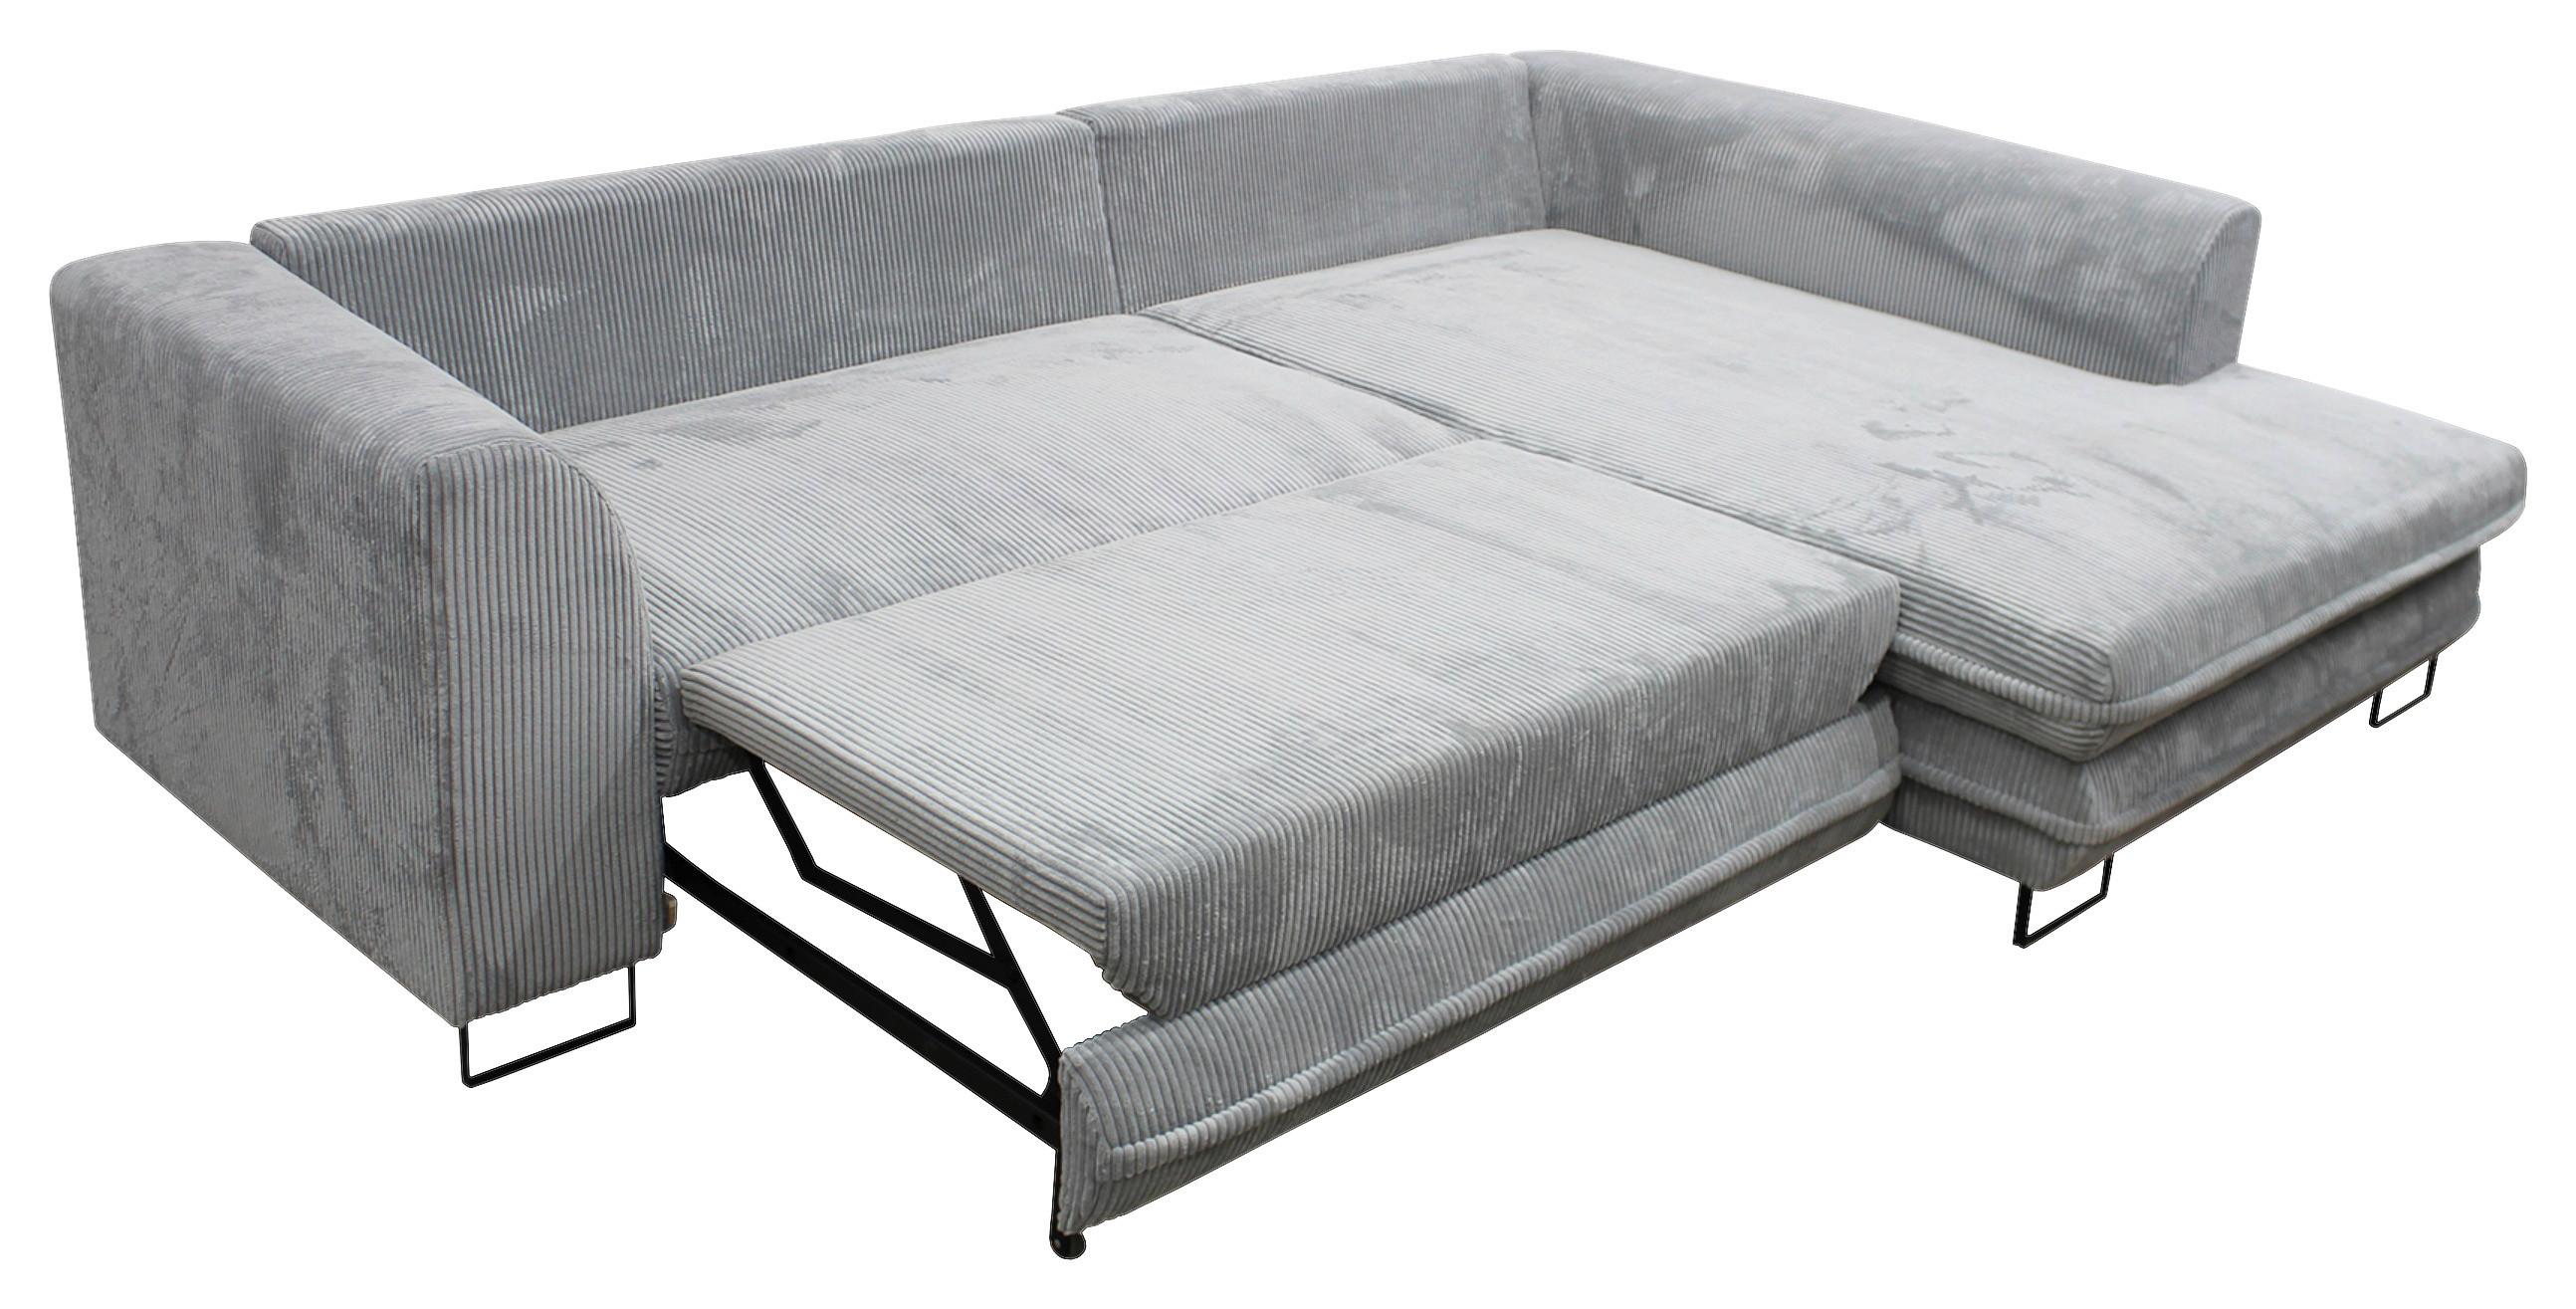 Sedežna Garnitura Gusto, Z Ležiščem - siva/črna, Trend, kovina/tekstil (283/69-84/186cm) - Modern Living